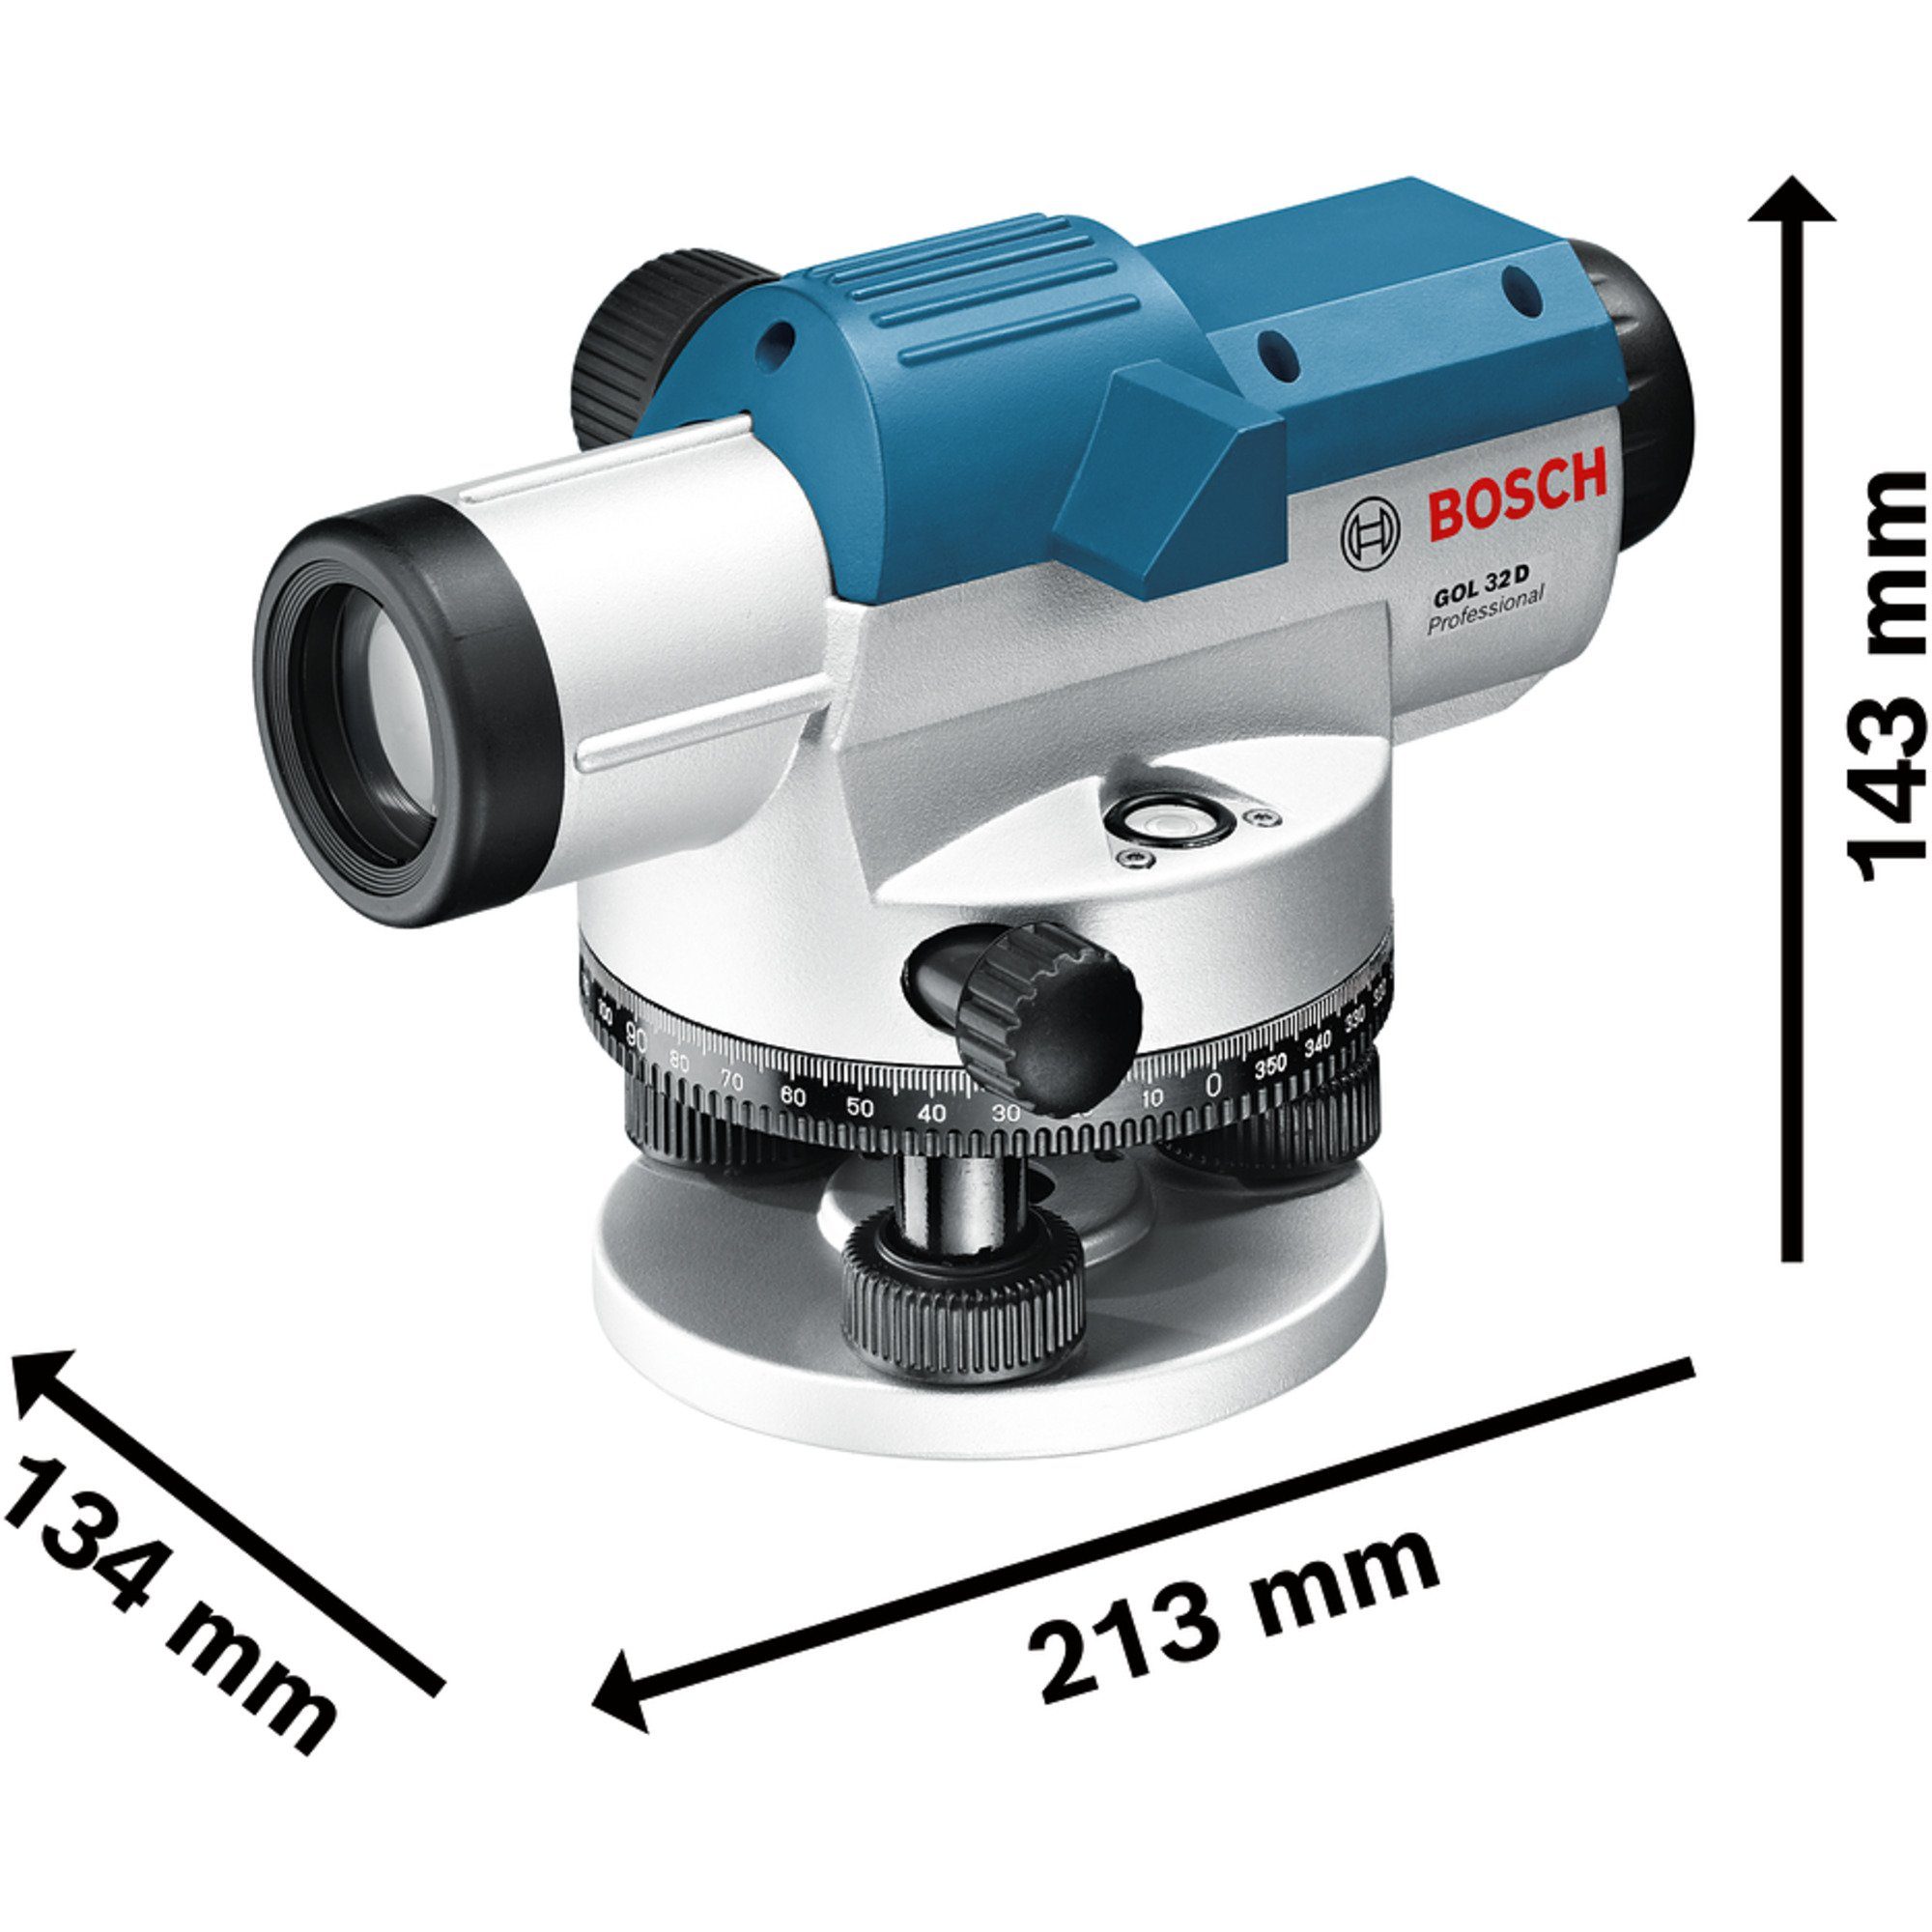 Akku-Multifunktionswerkzeug BOSCH GOL 32 Optisches Professional Bosch Nivelliergerät